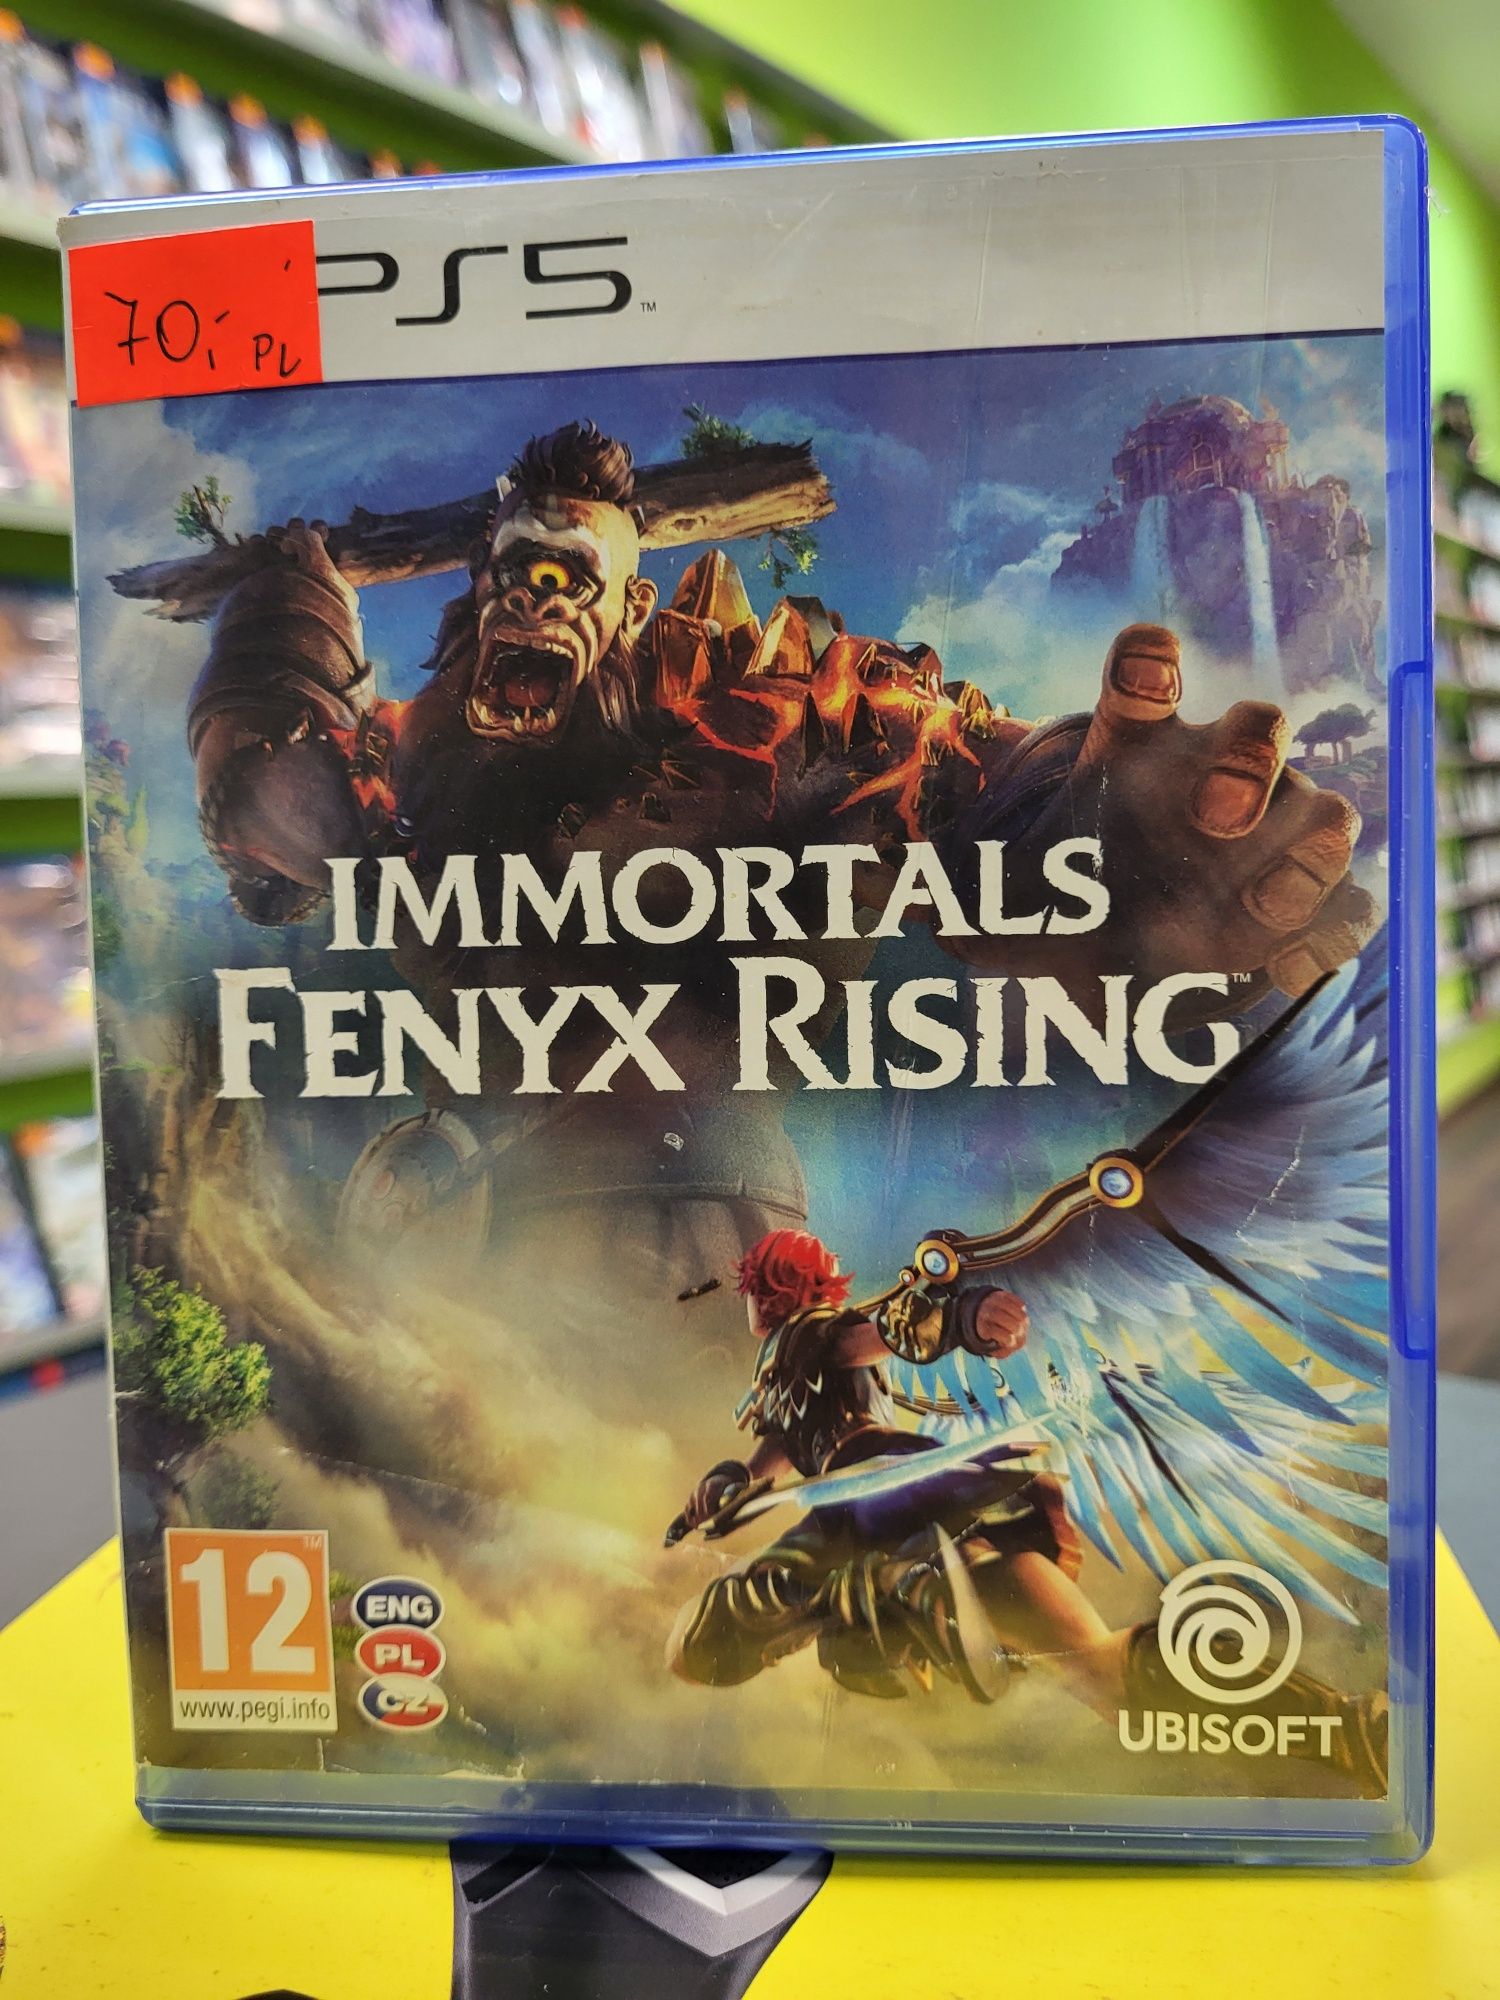 Immortals Fenix Rising PS5